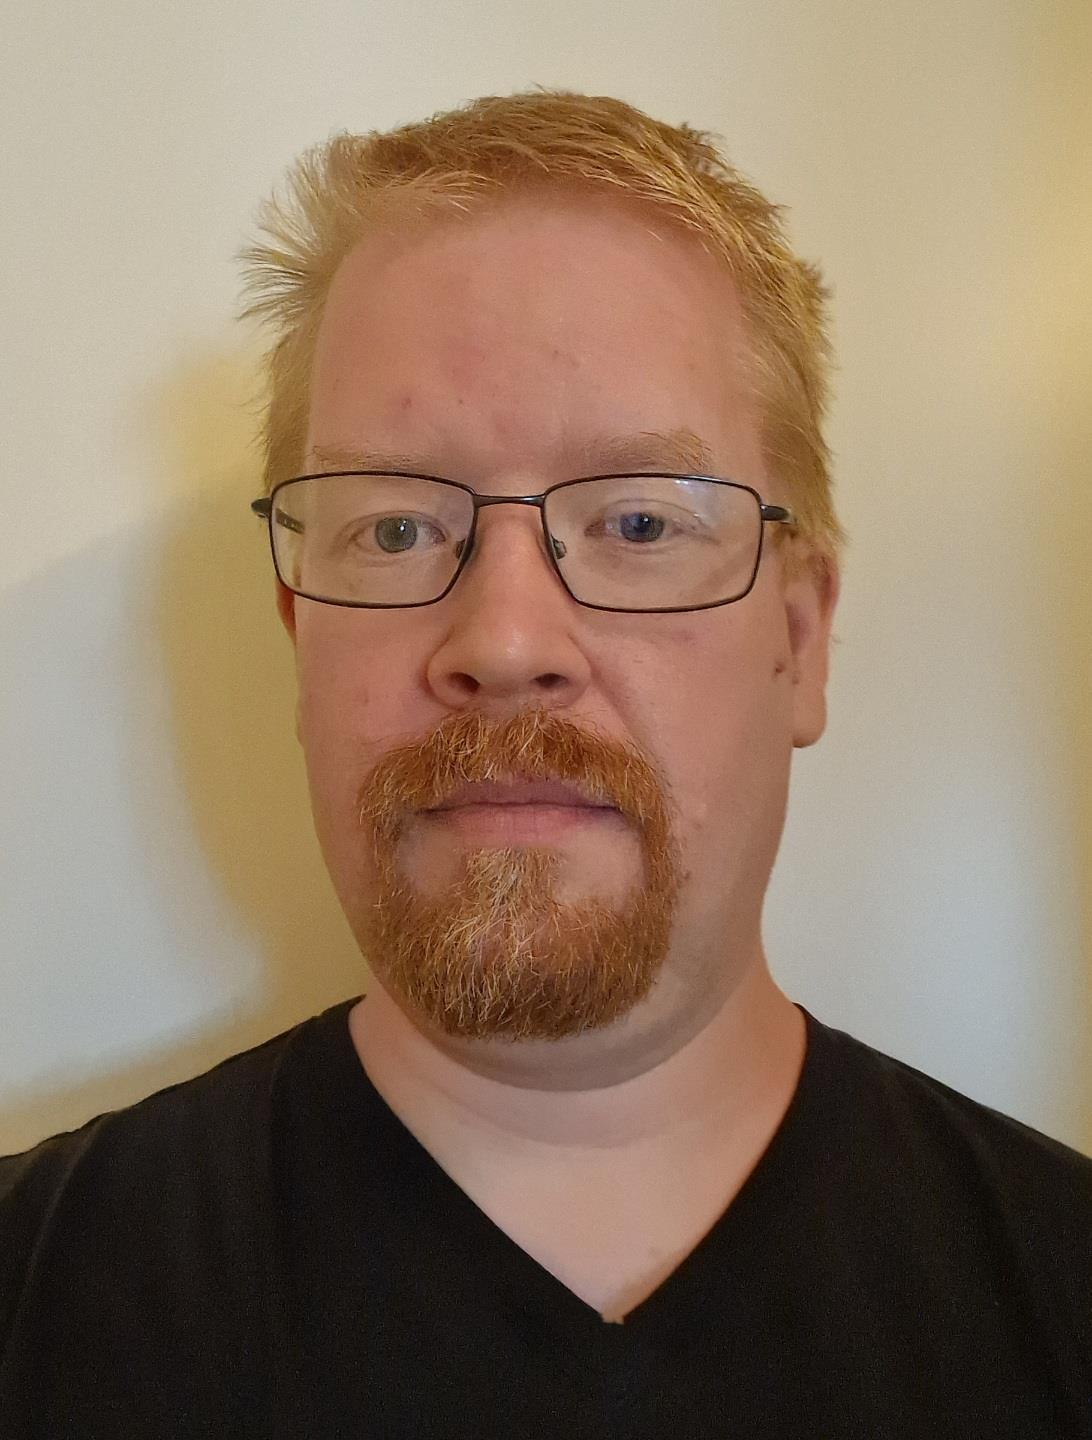 En mann med kort rødt hår og skjegg, sorte briller og svart t-skjorte. - Klikk for stort bilde